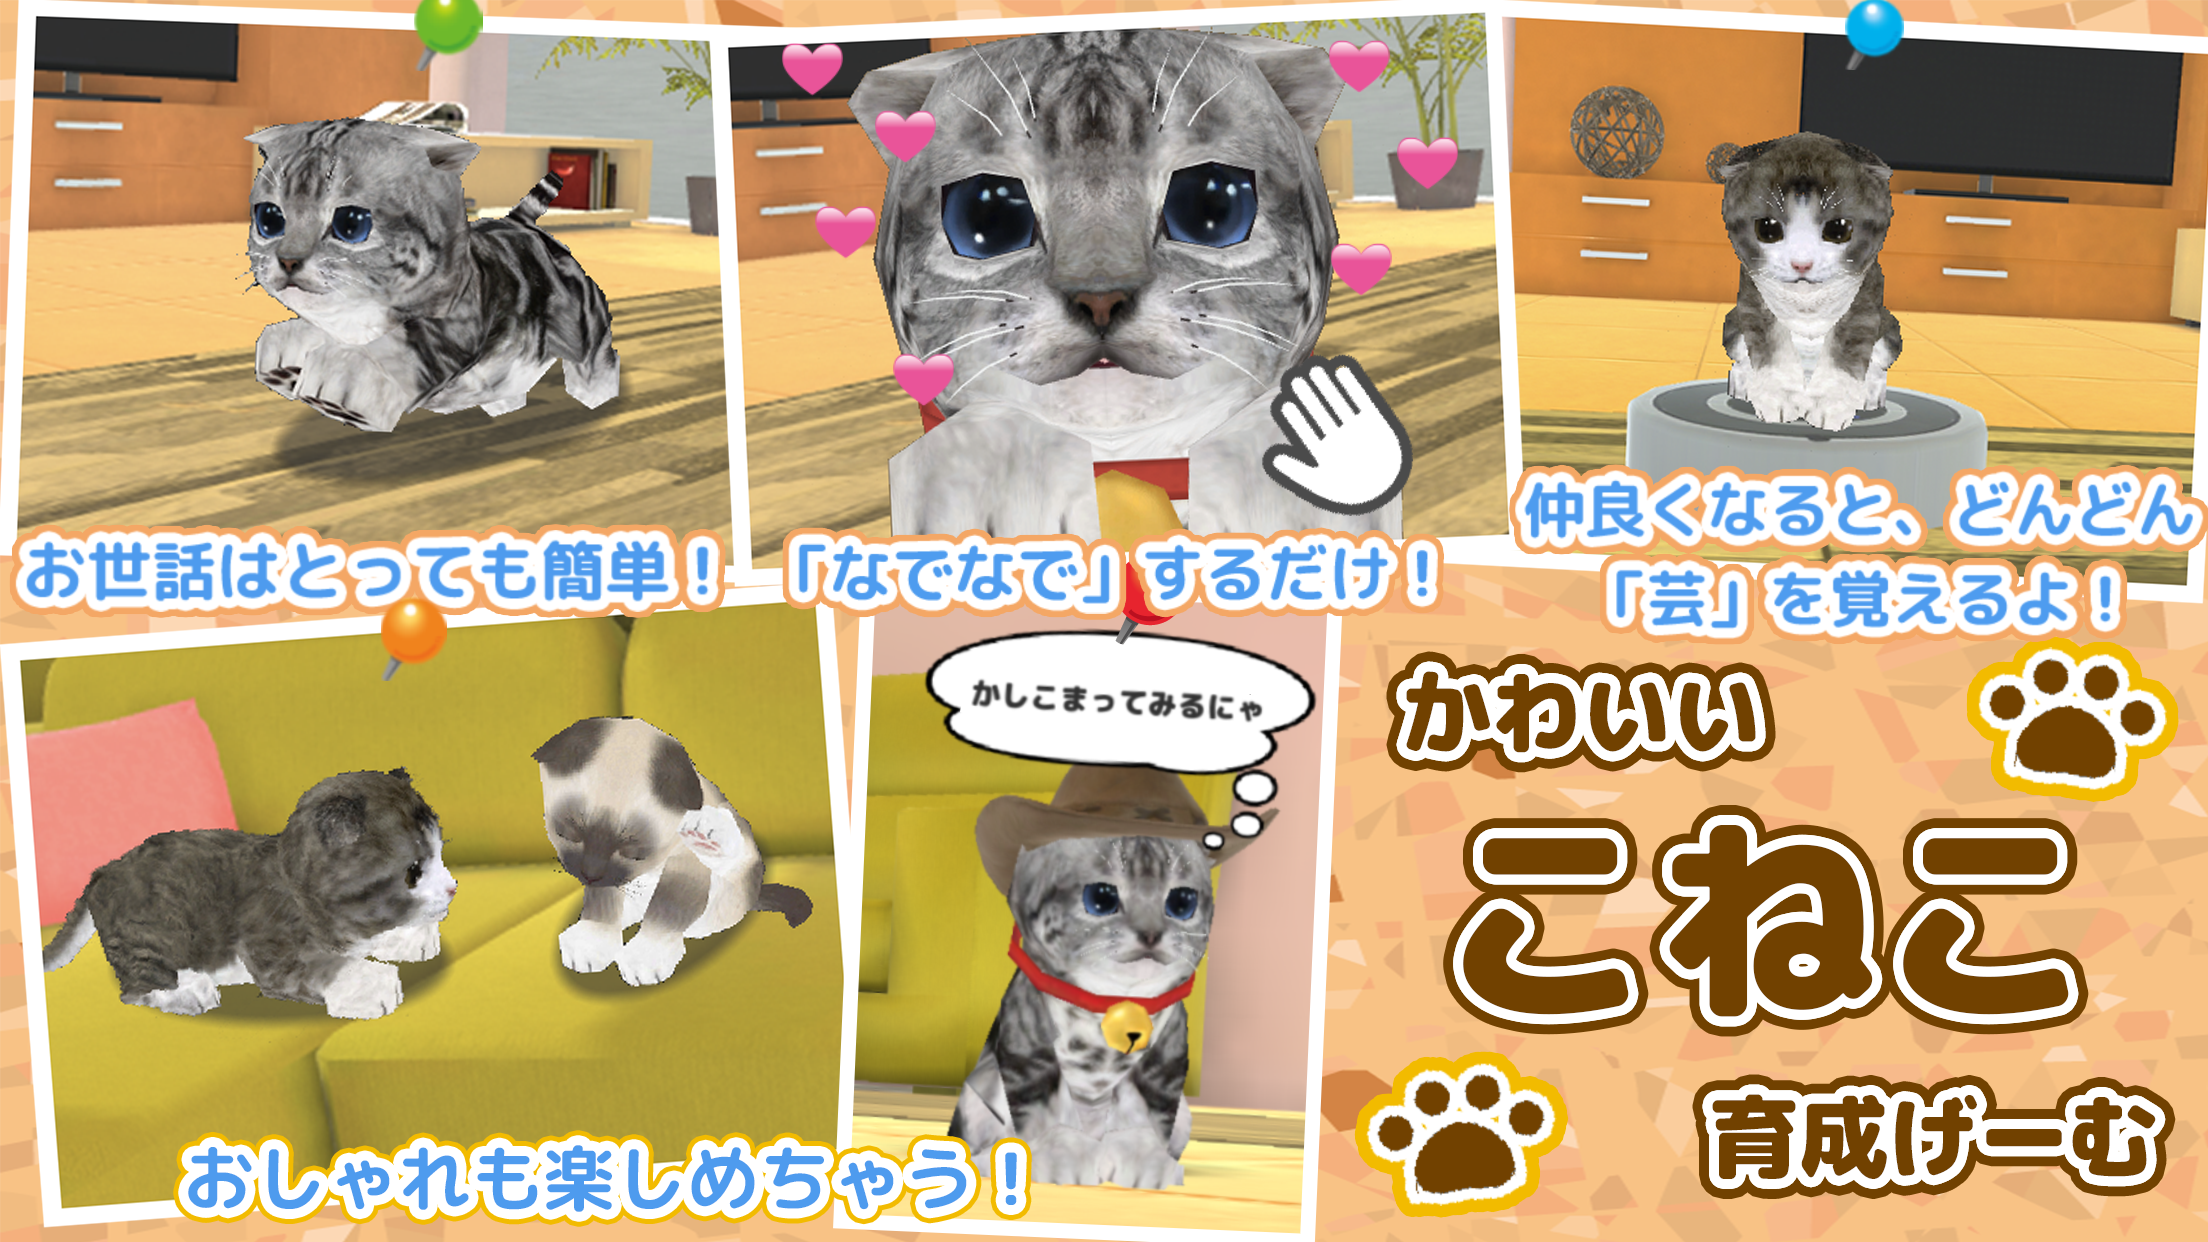 Screenshot 1 of Jogo relaxante de criação de gatos 2.0.5